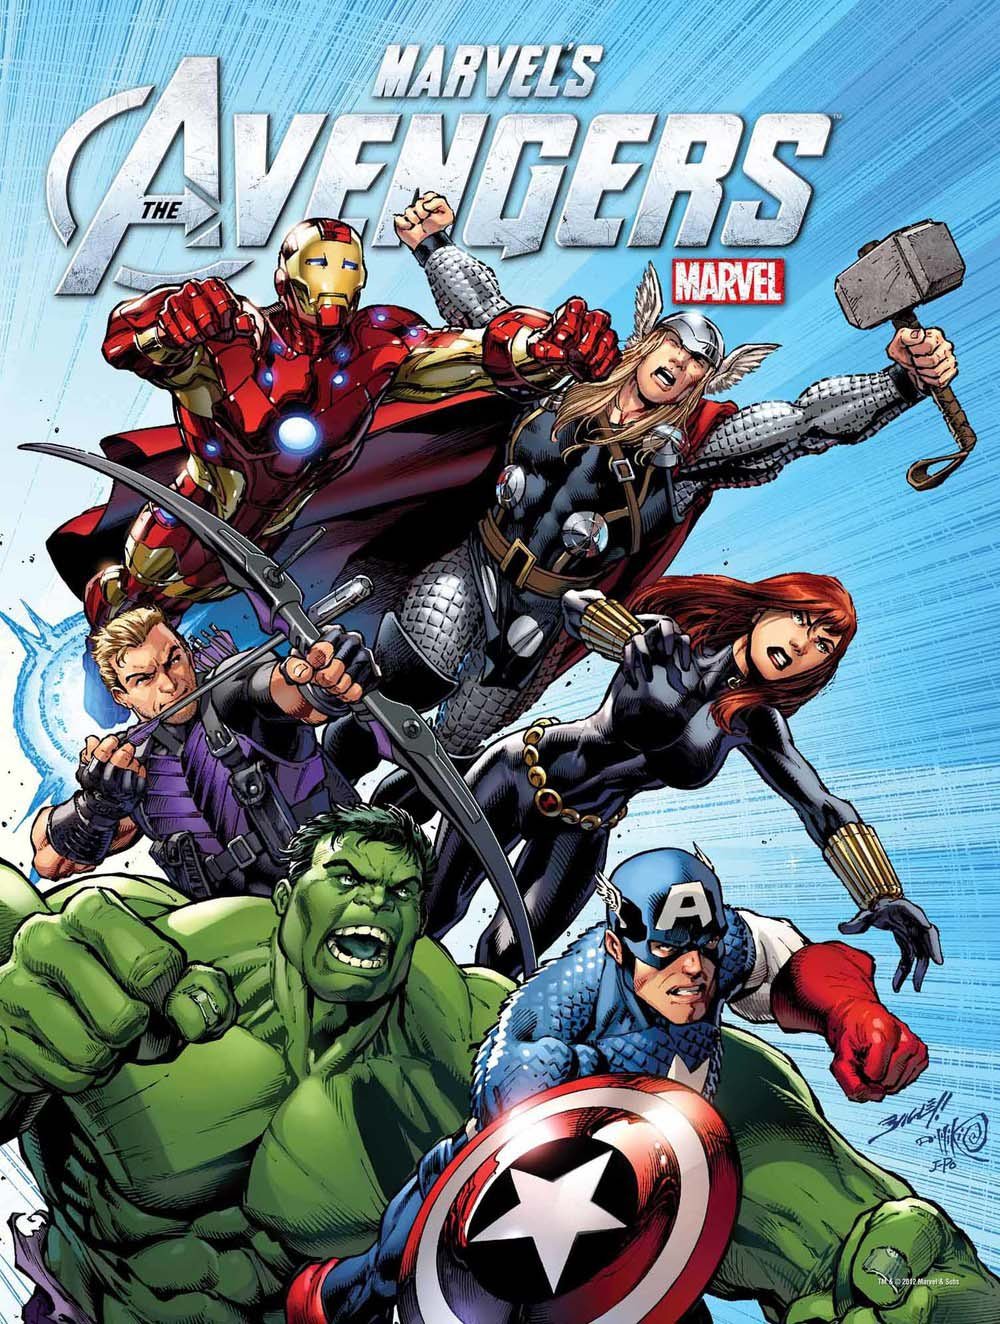 შურისმაძიებლები სეზონი 3 / Avengers Assemble Season 3 ქართულად